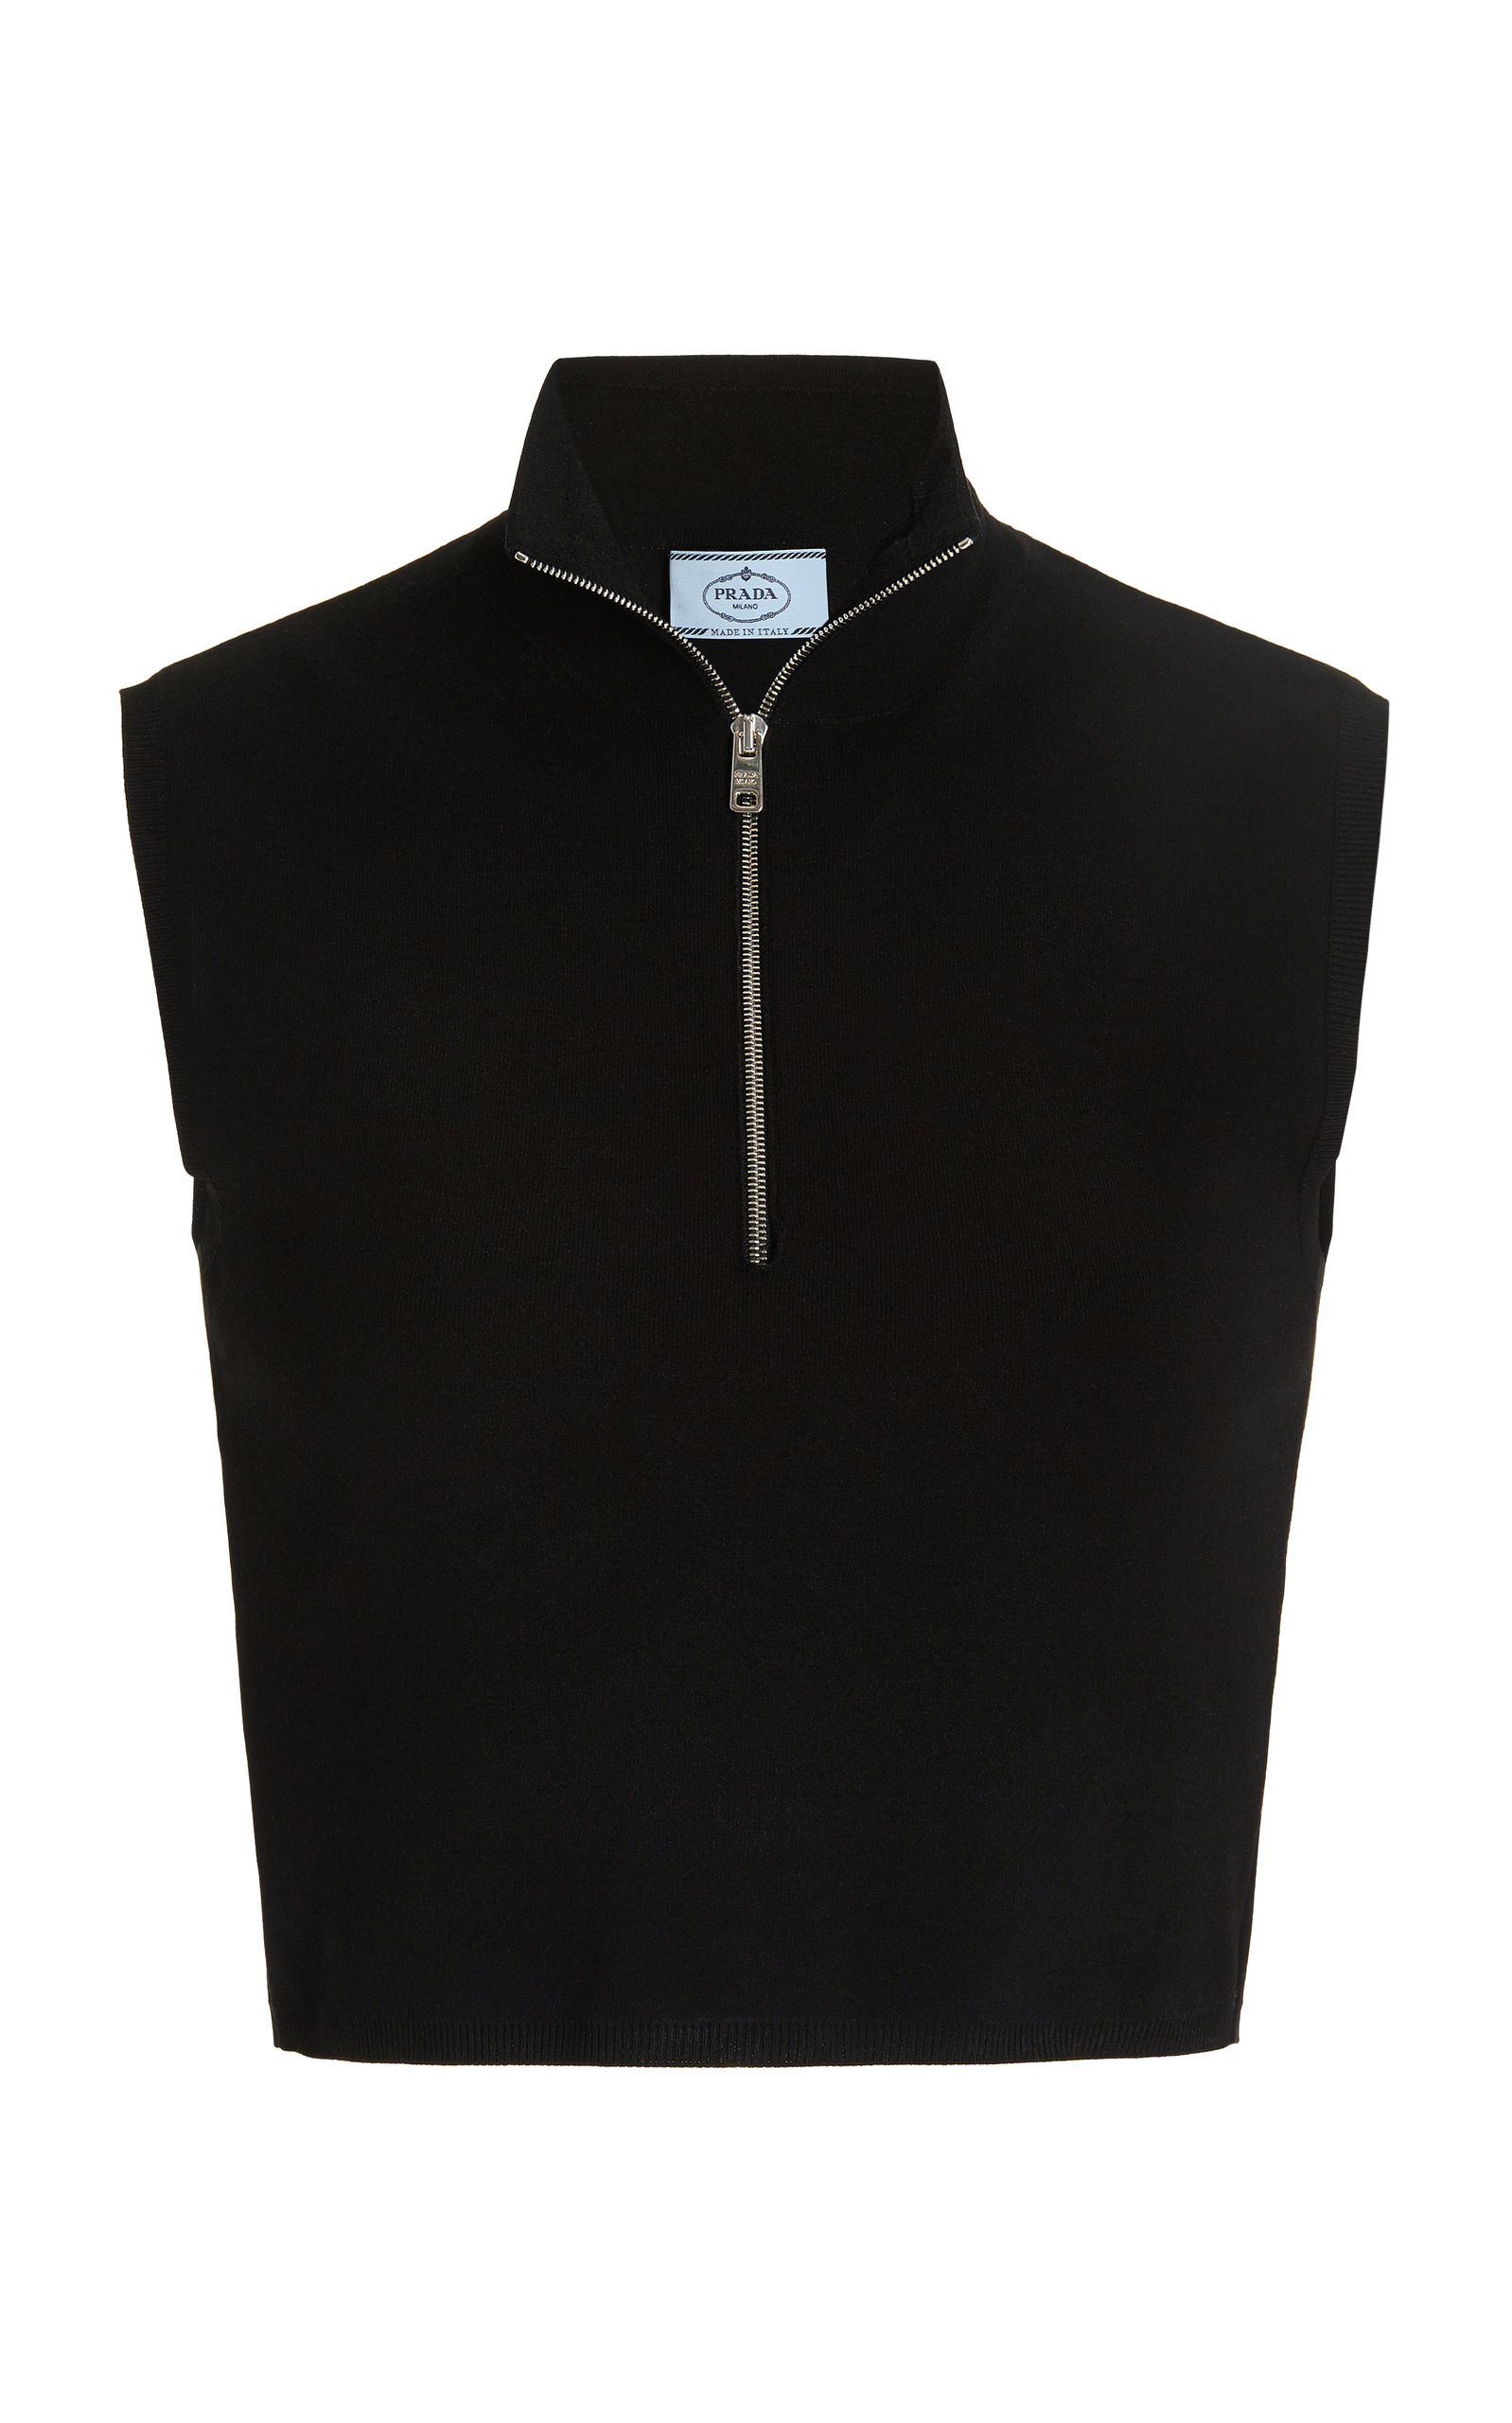 Prada - Women's Logo-Detailed Ribbed Jersey Turtleneck Crop Top - Black - IT 36 - Moda Operandi